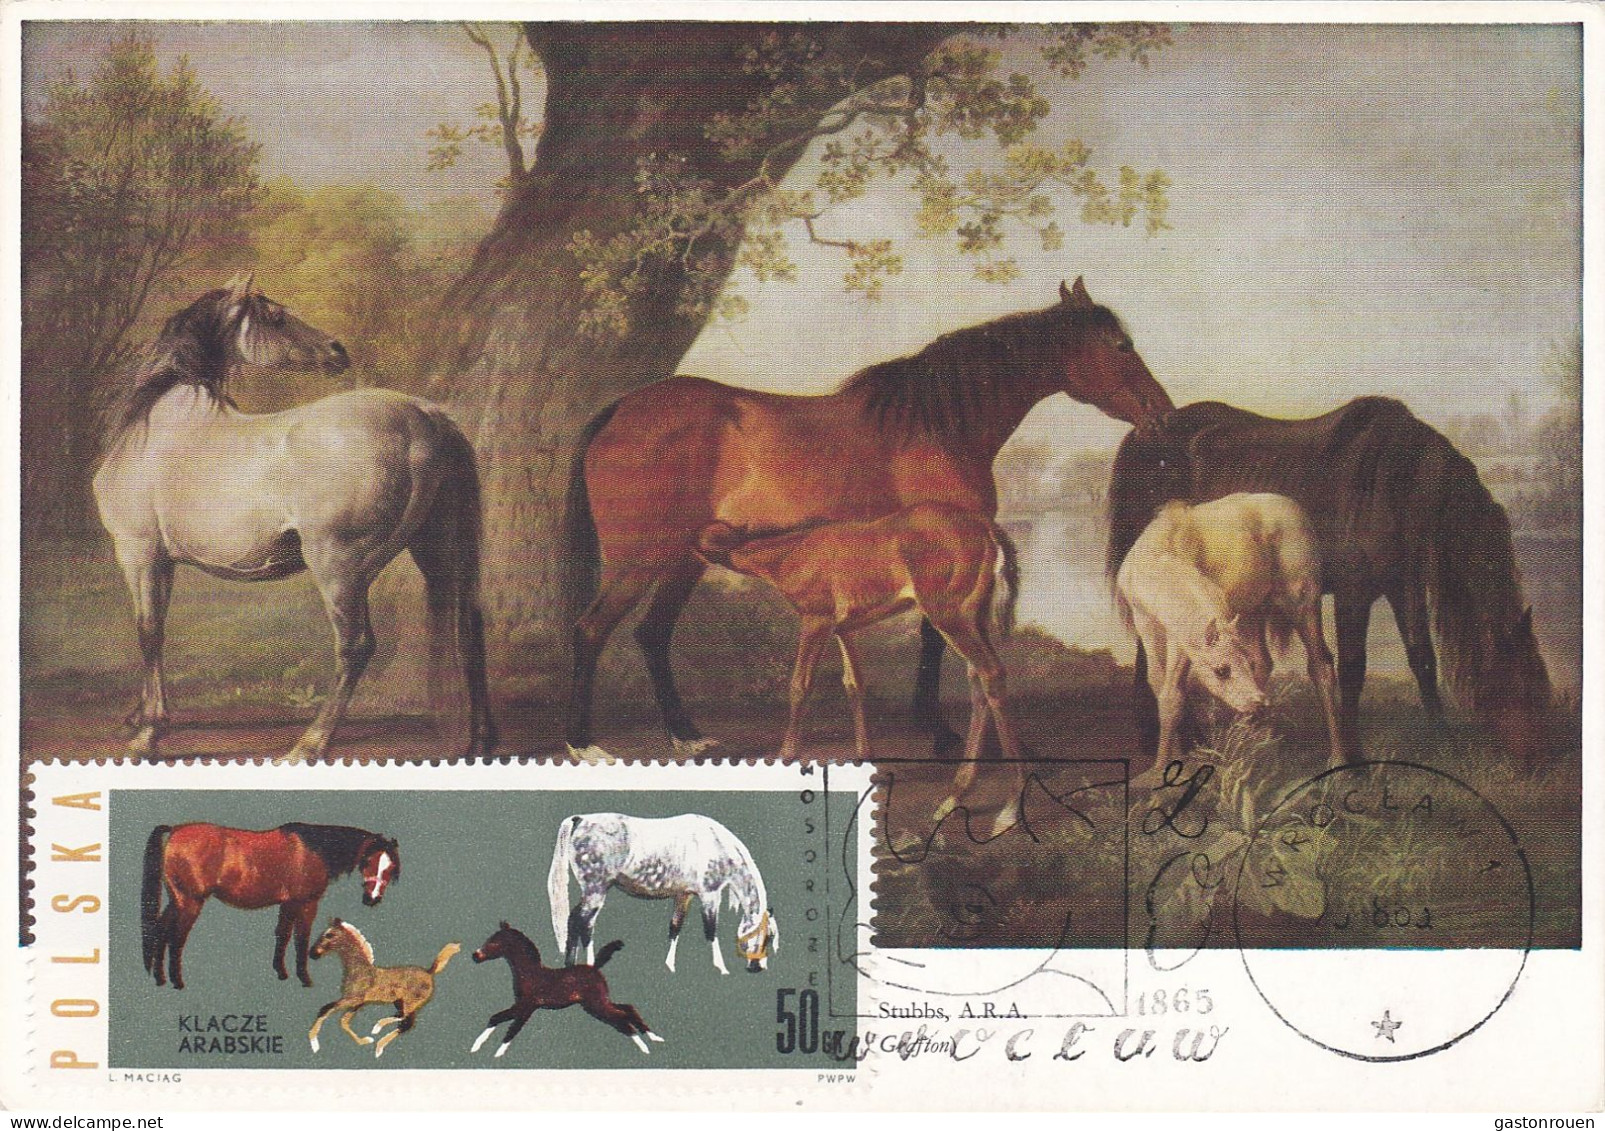 Carte Maximum Hongrie Hungary Cheval Horse 1315 - Maximumkarten (MC)